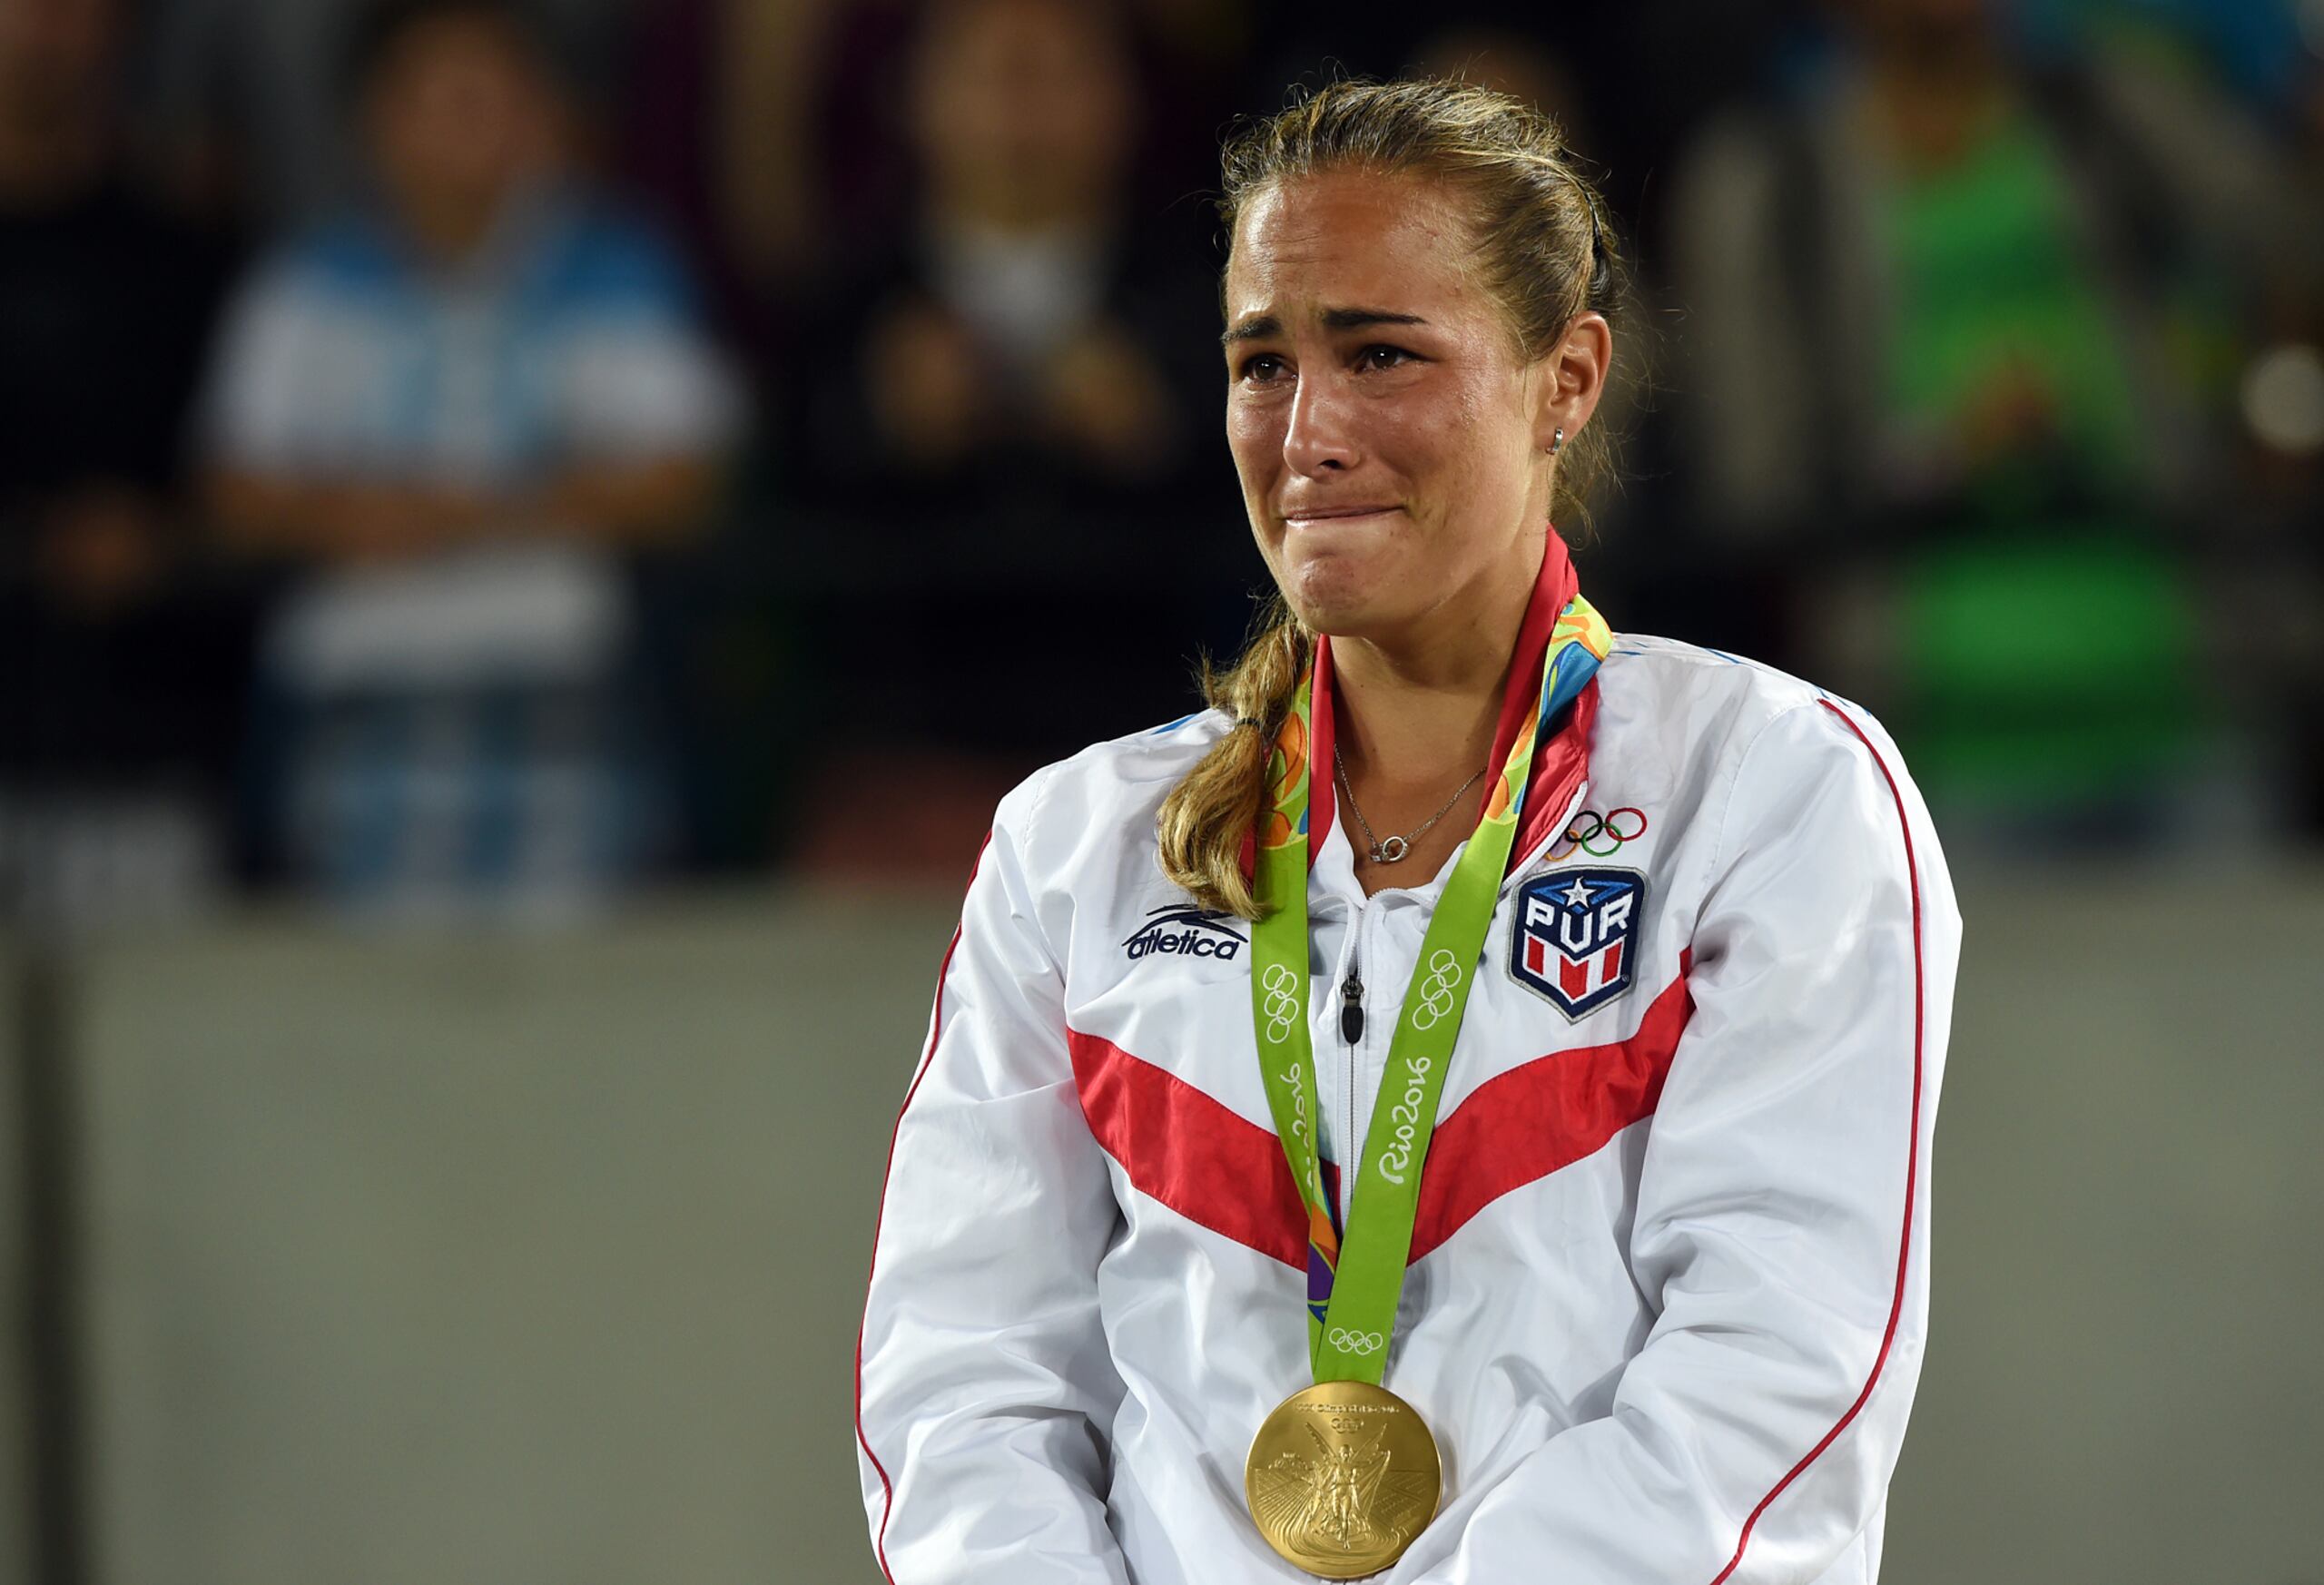 La tenista boricua Mónica Puig escucha La Borinqueña, entre lágrimas, tras su gesta en los Juegos Olímpicos Río 2016. Ese día se convirtió en la primera atleta del Comité Olímpico de Puerto Rico en ganar una medalla de oro a nivel olímpico.